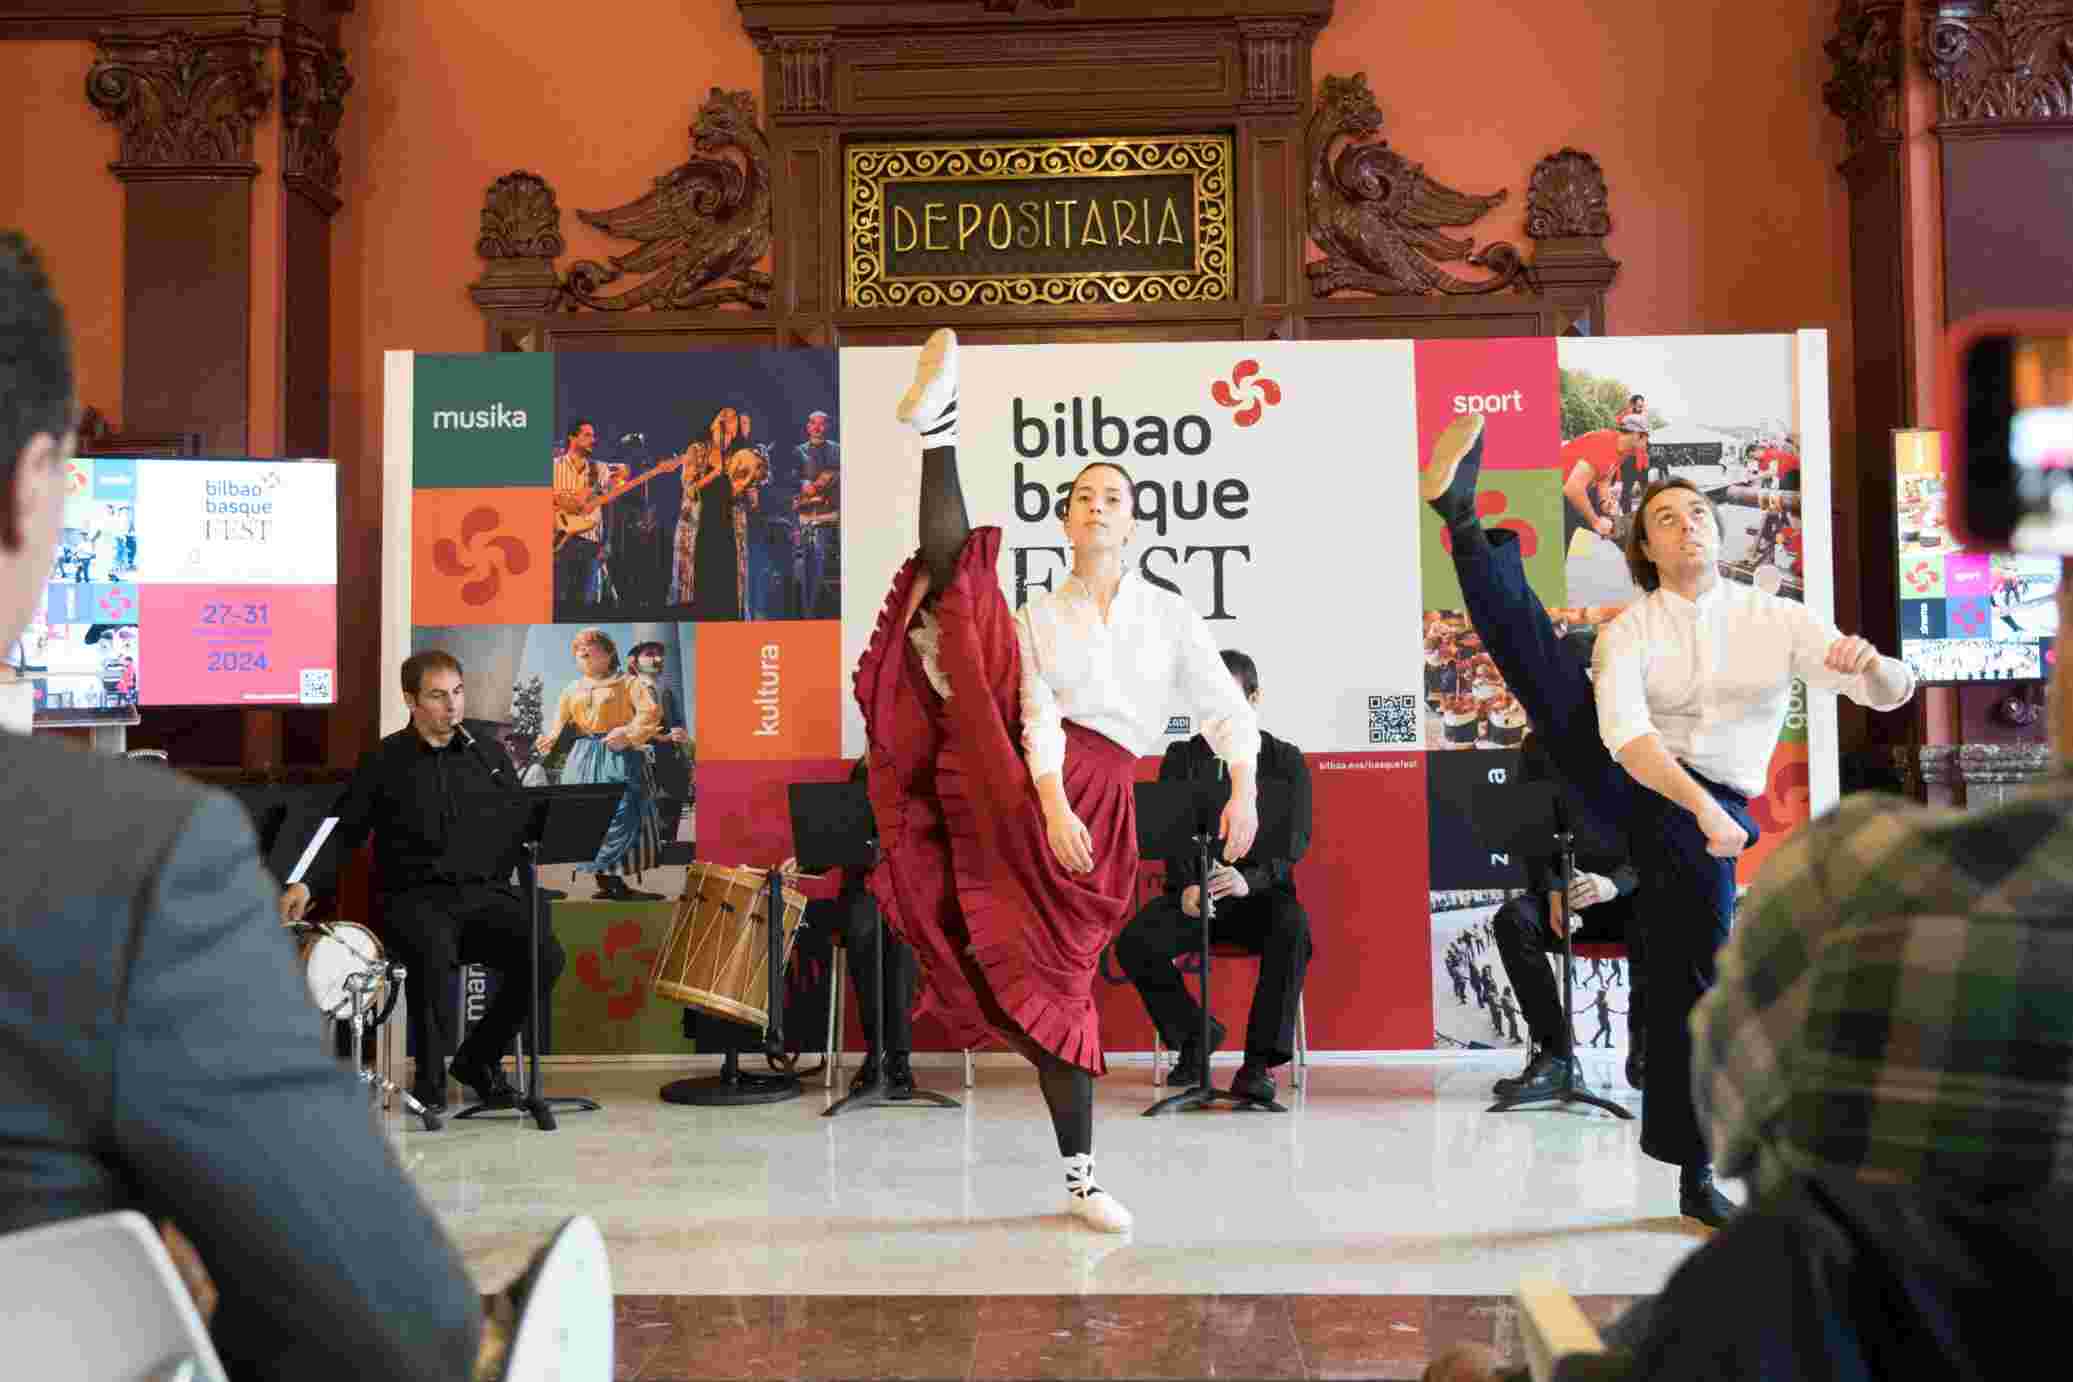 Bilbao Basque Fest